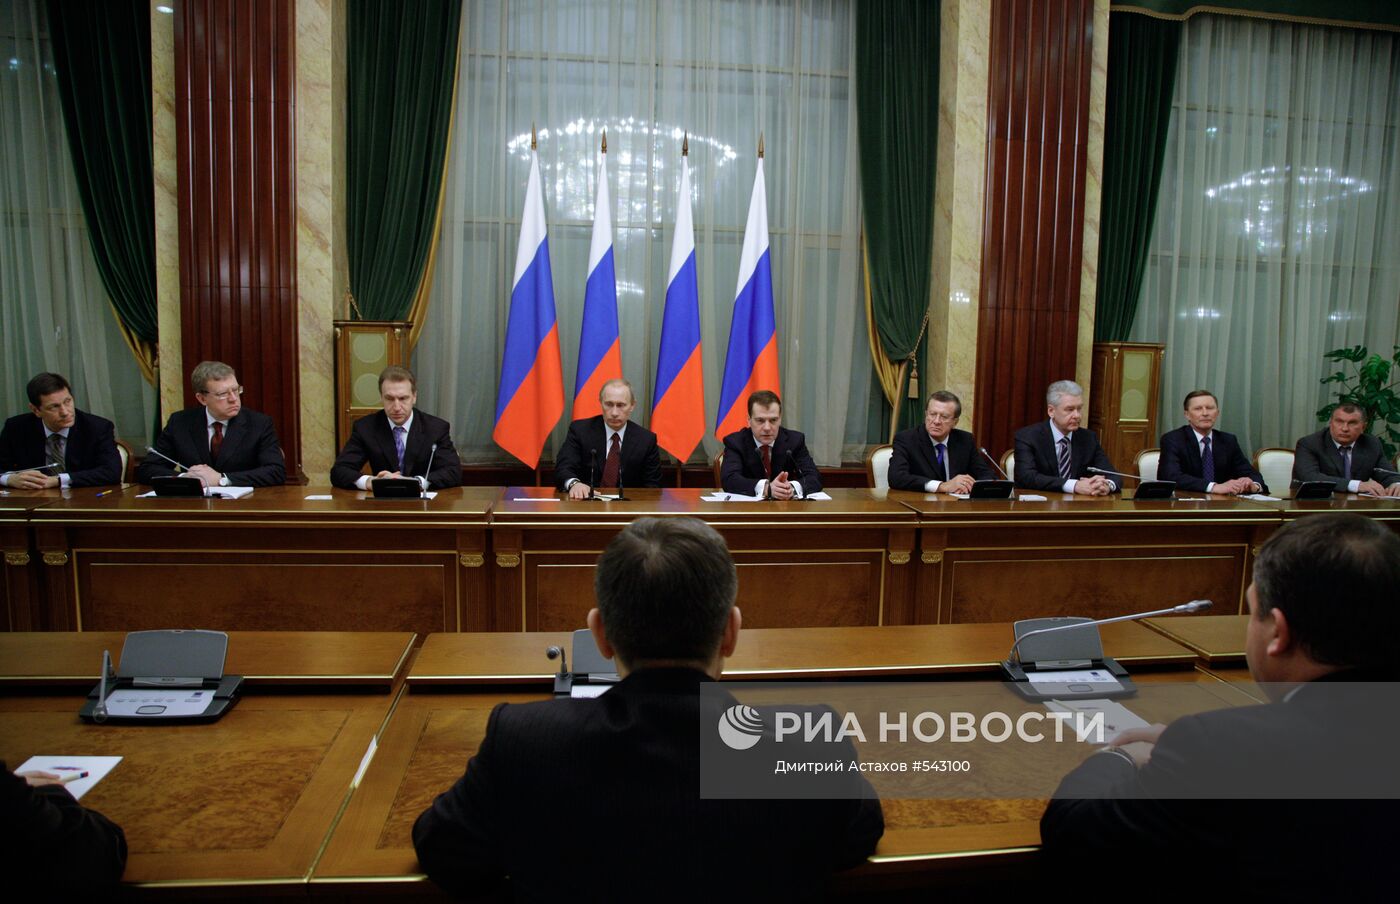 Д. Медведев принял участие в заседании кабинета министров РФ